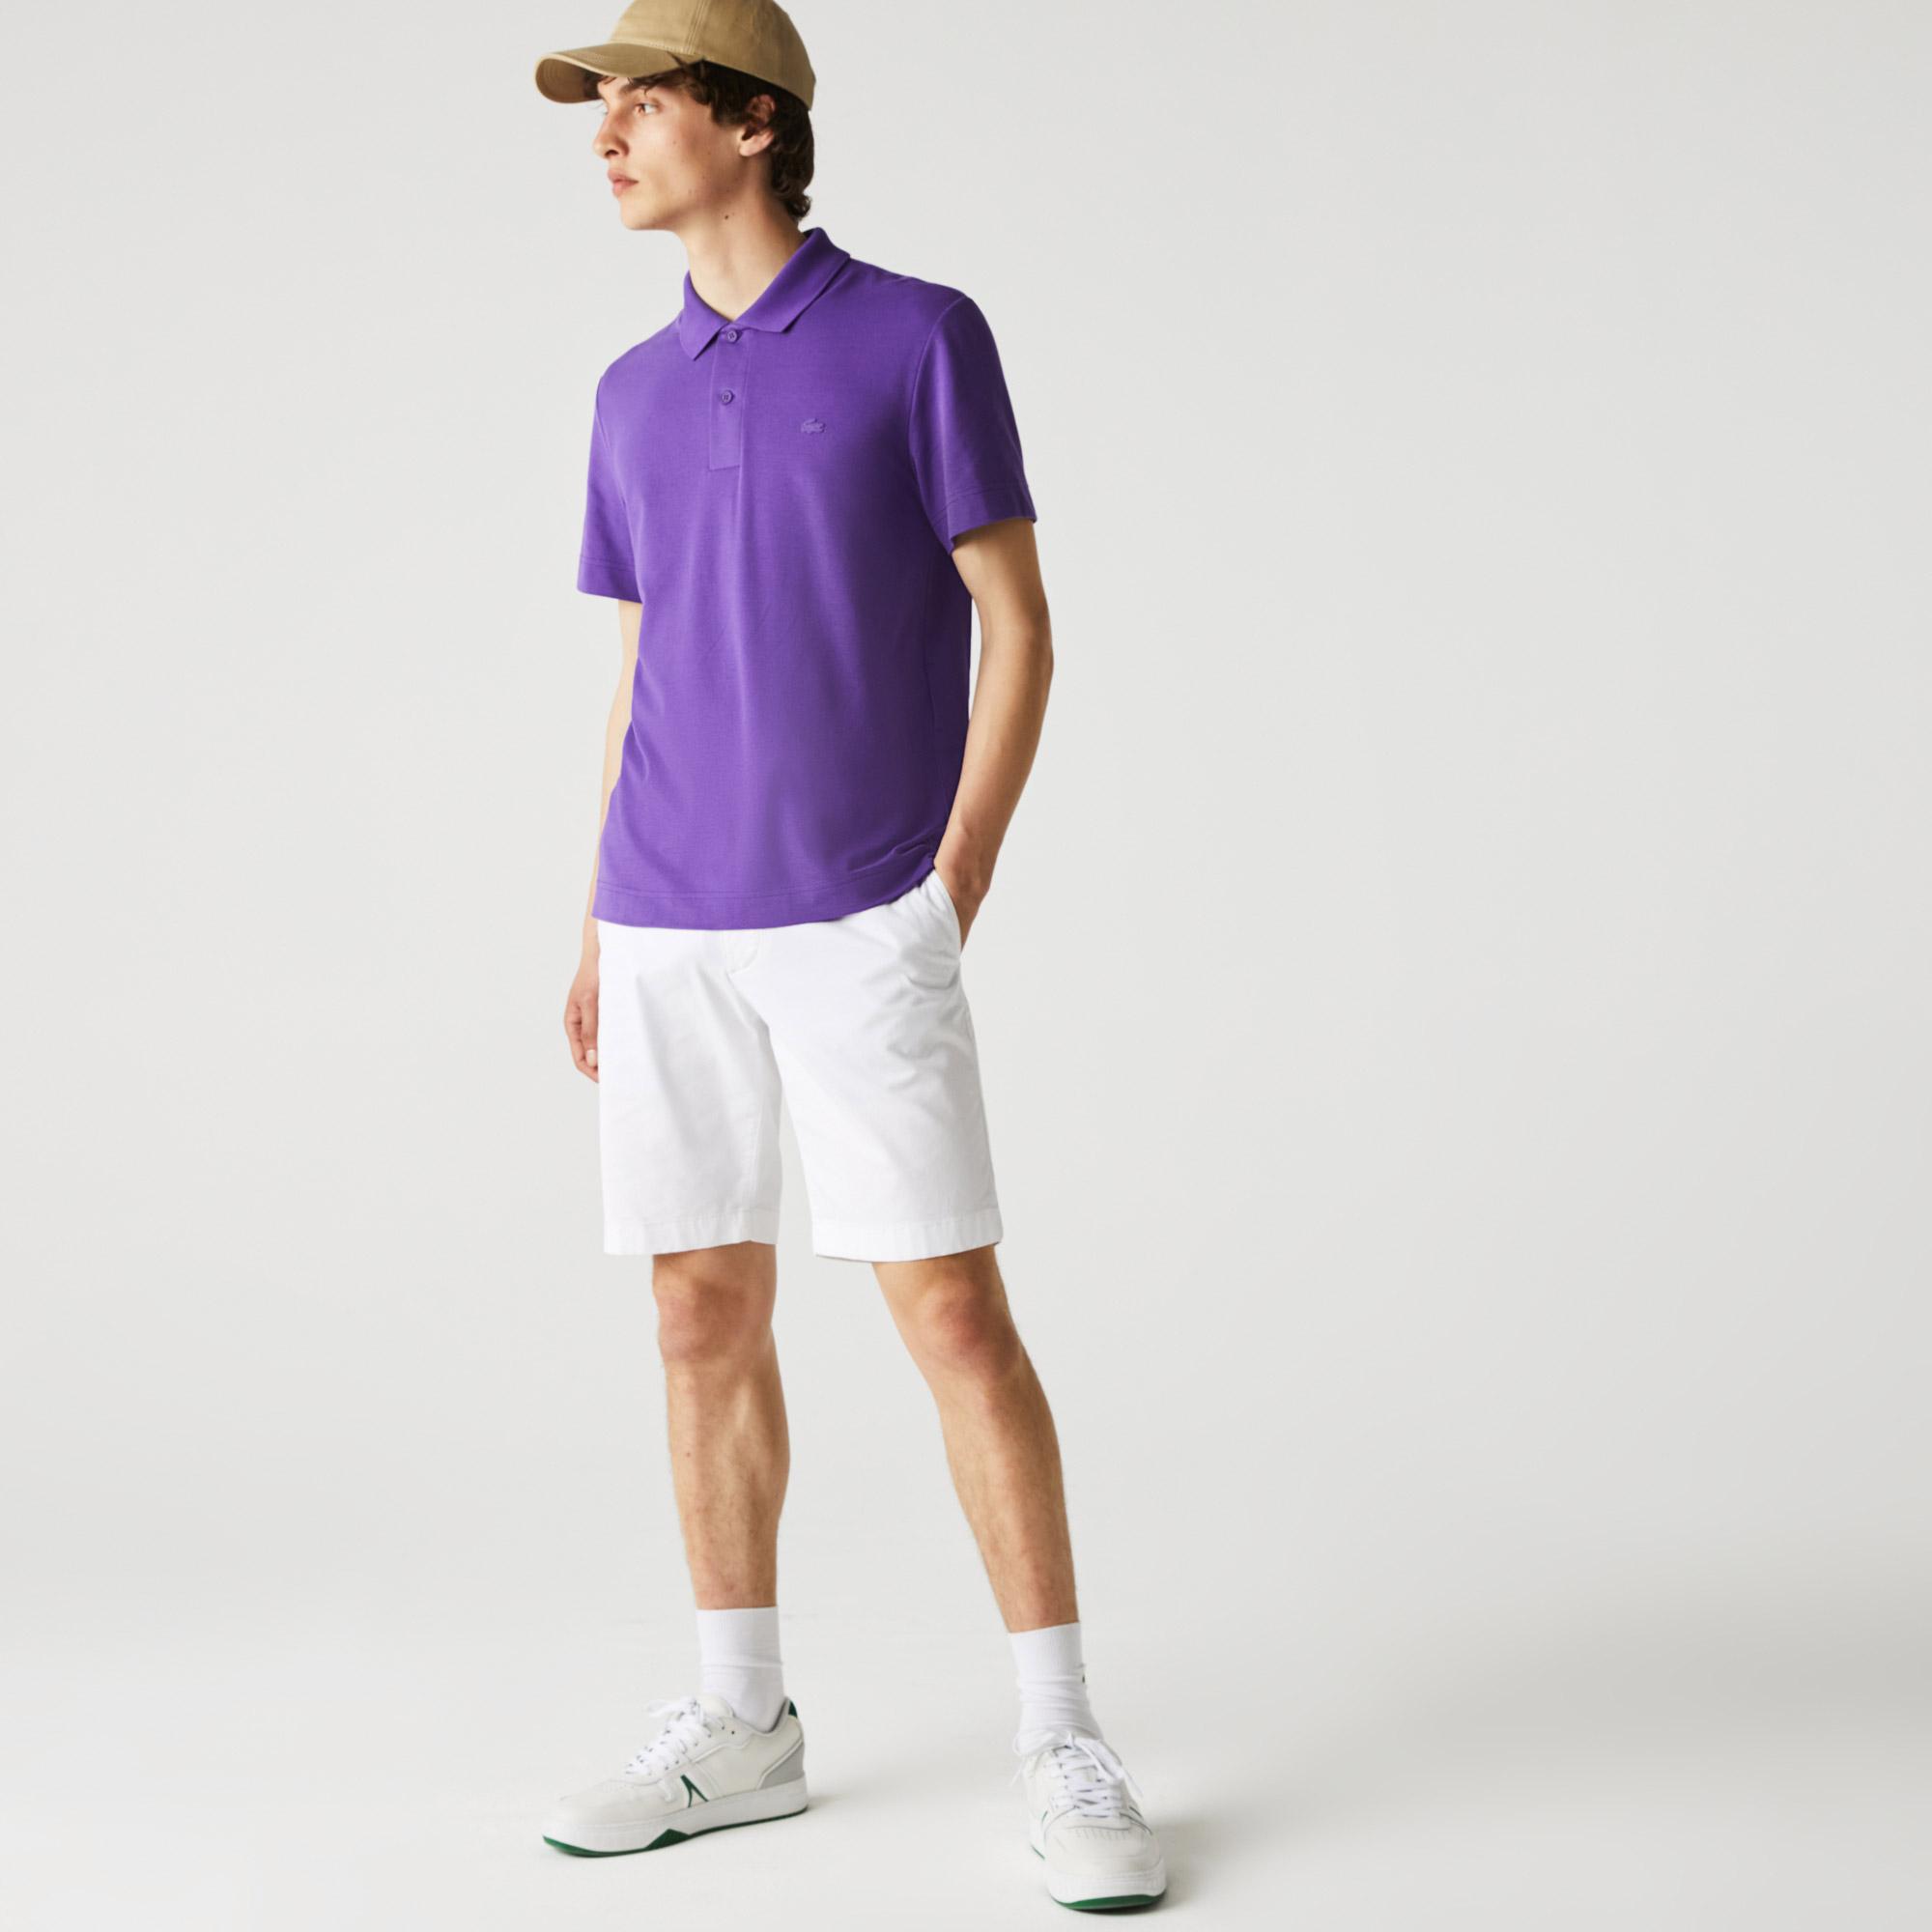 Lacoste Men's Regular Fit Light Breathable Piqué Polo